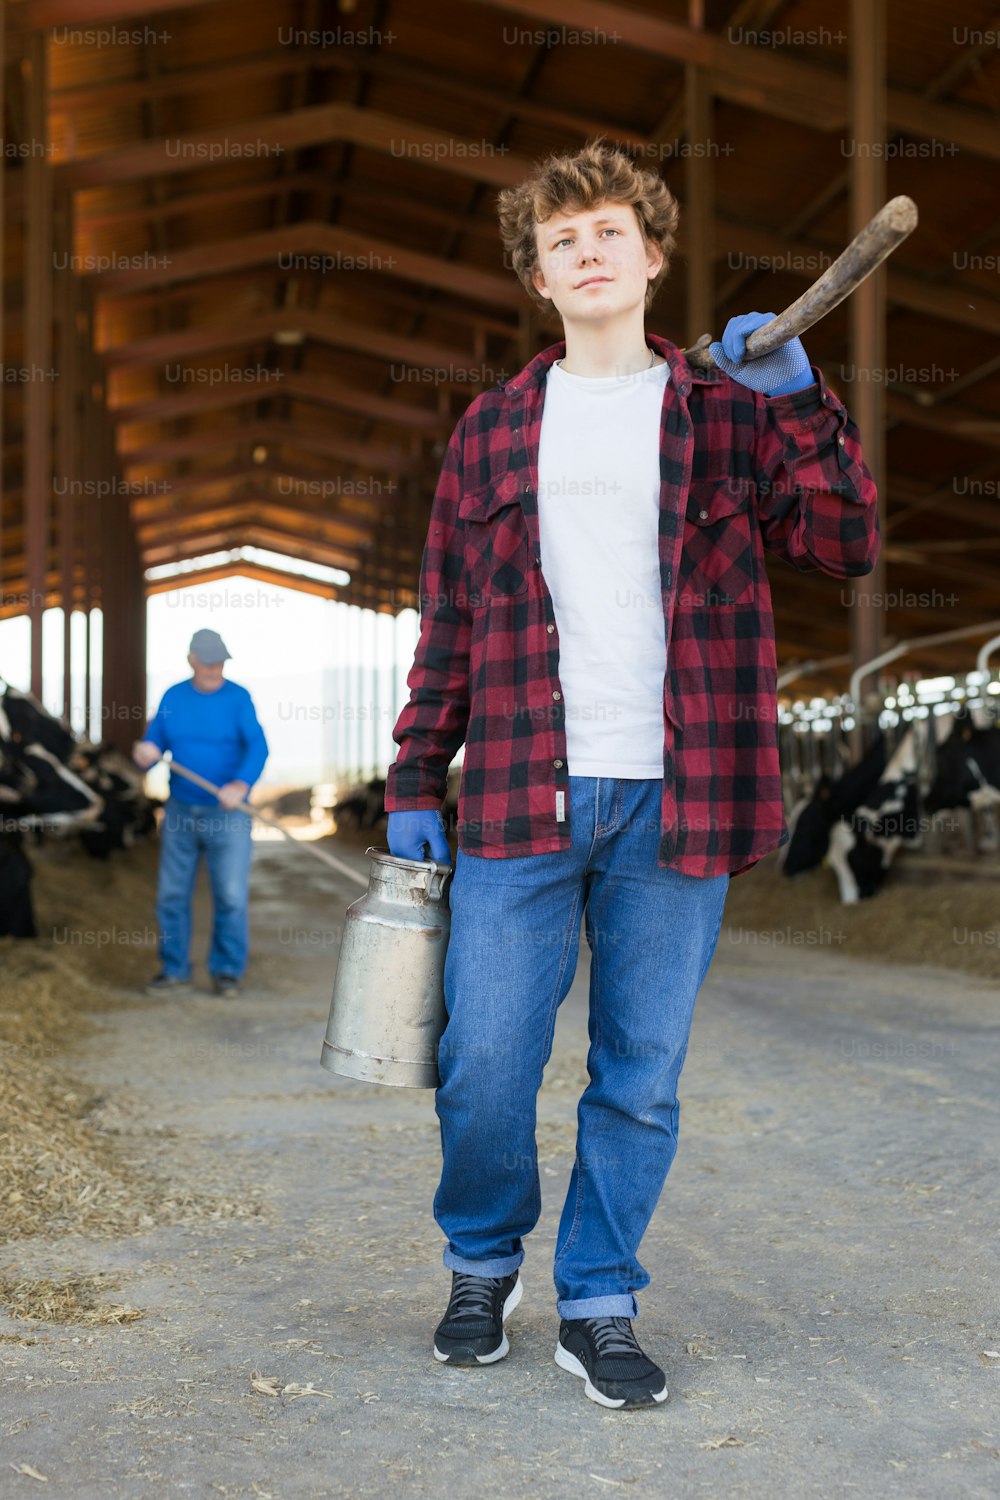 Trabajador agrícola adolescente seguro caminando a través del establo después del trabajo en el fondo del establo con vacas, llevando horcas y latas de leche